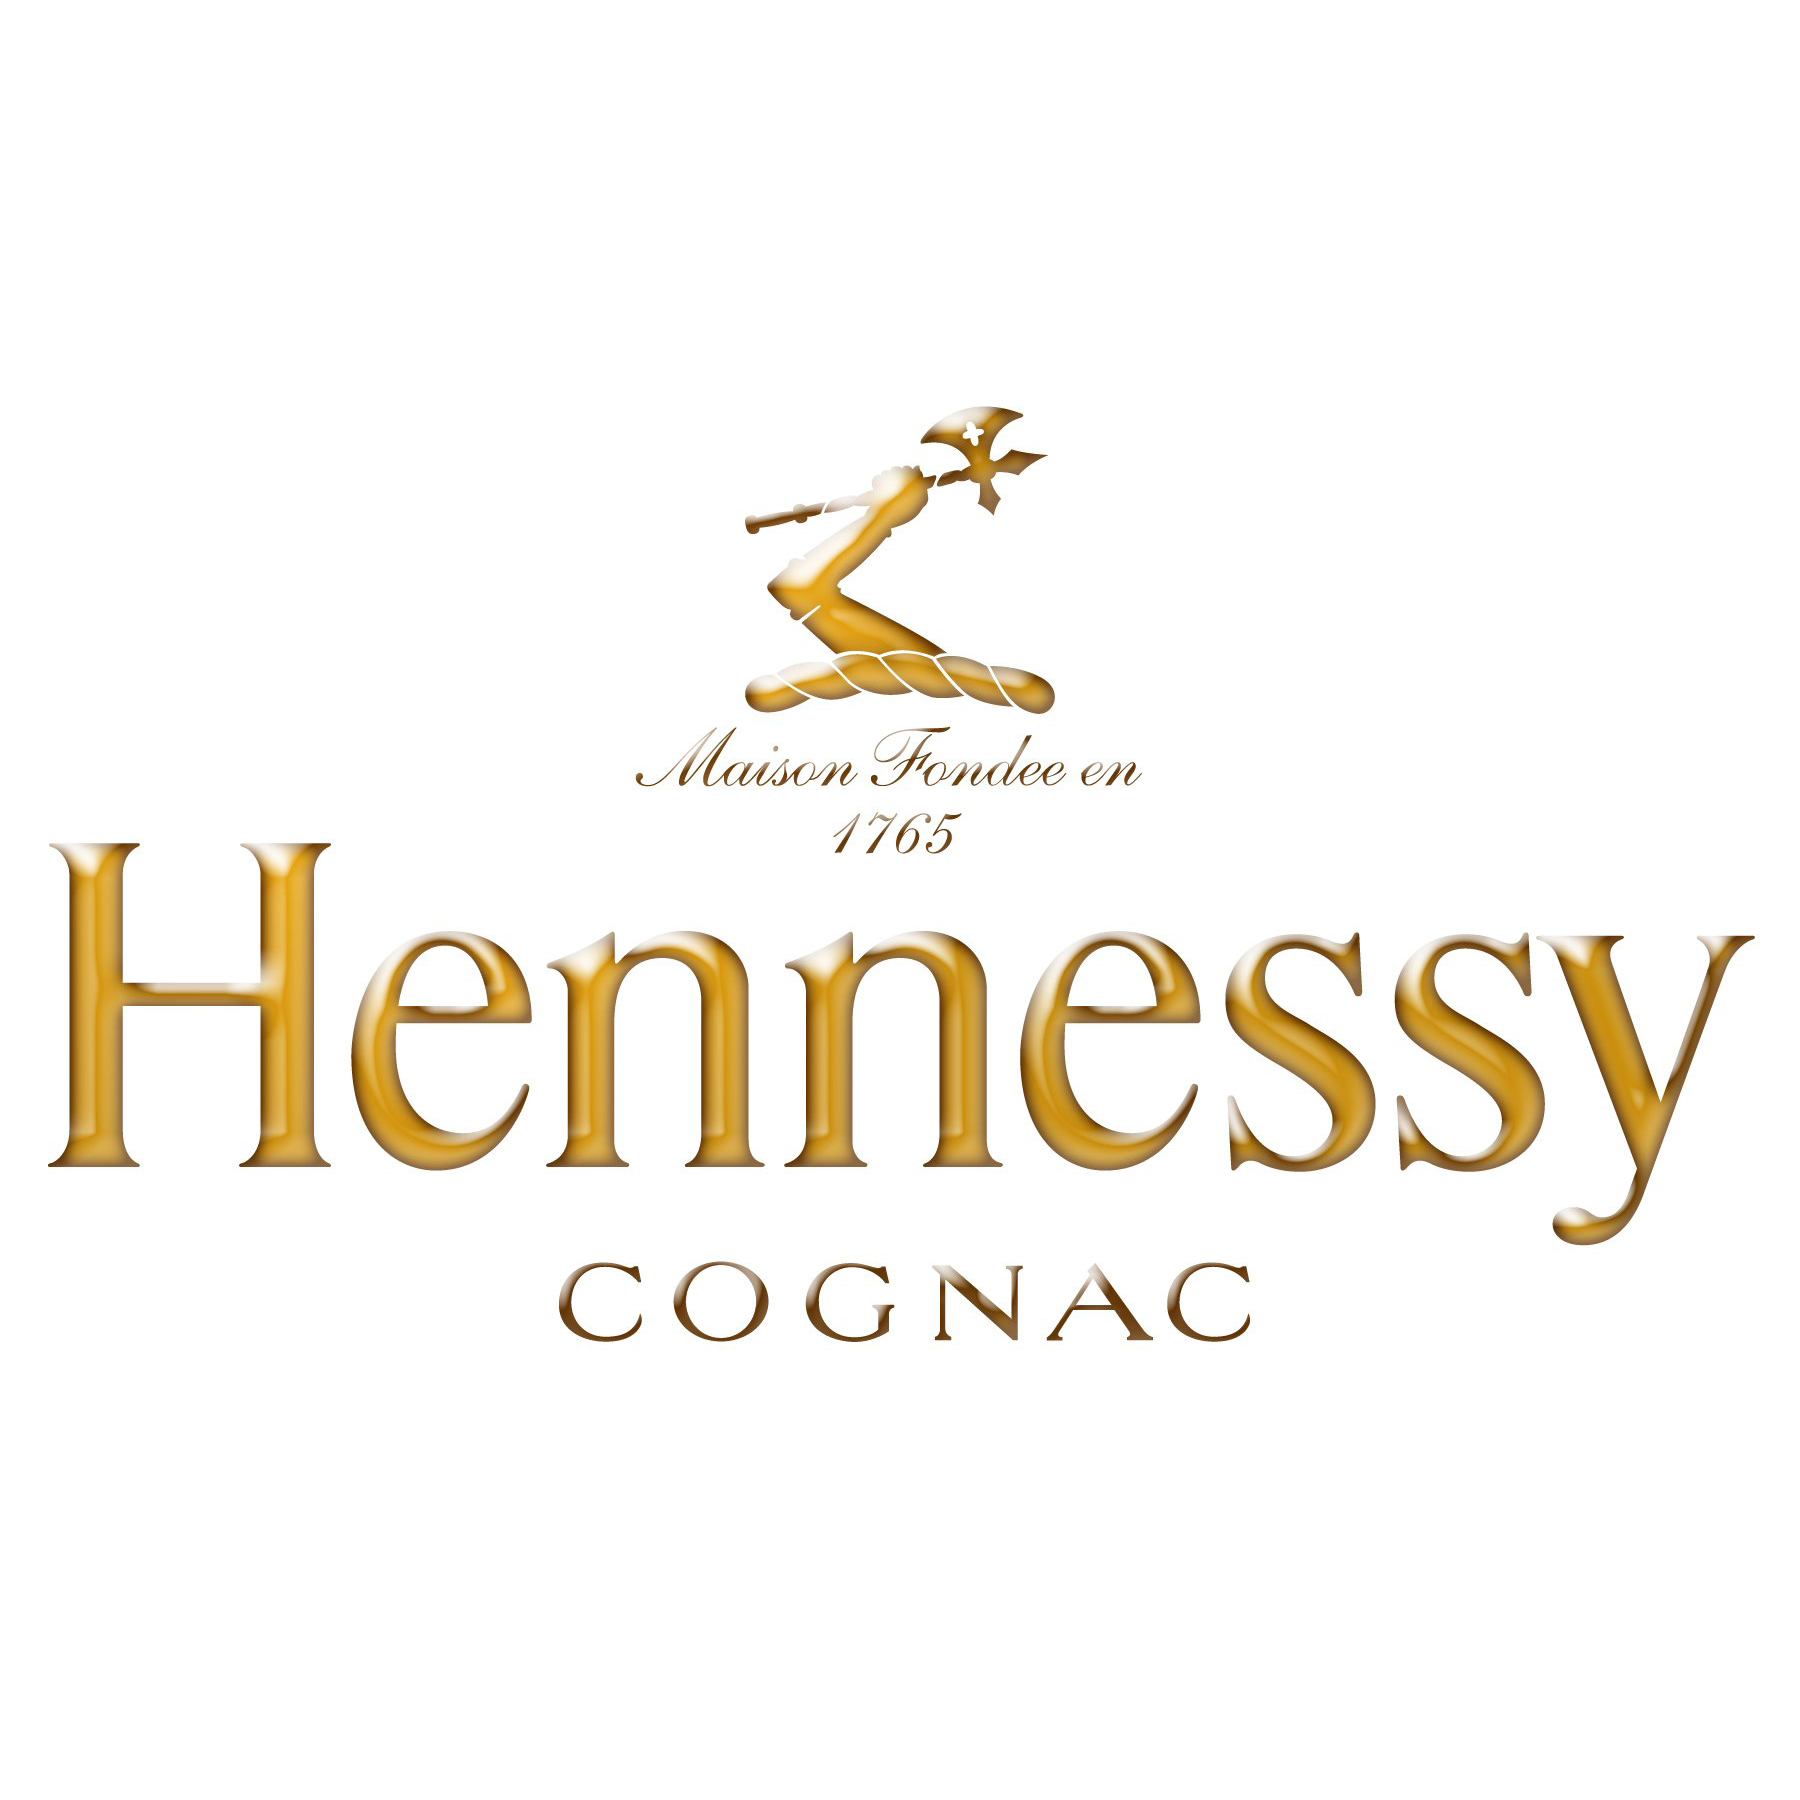 Коньяк Hennessy VS 4 года выдержки 0,35л 40% в подарочной упаковке в Украине